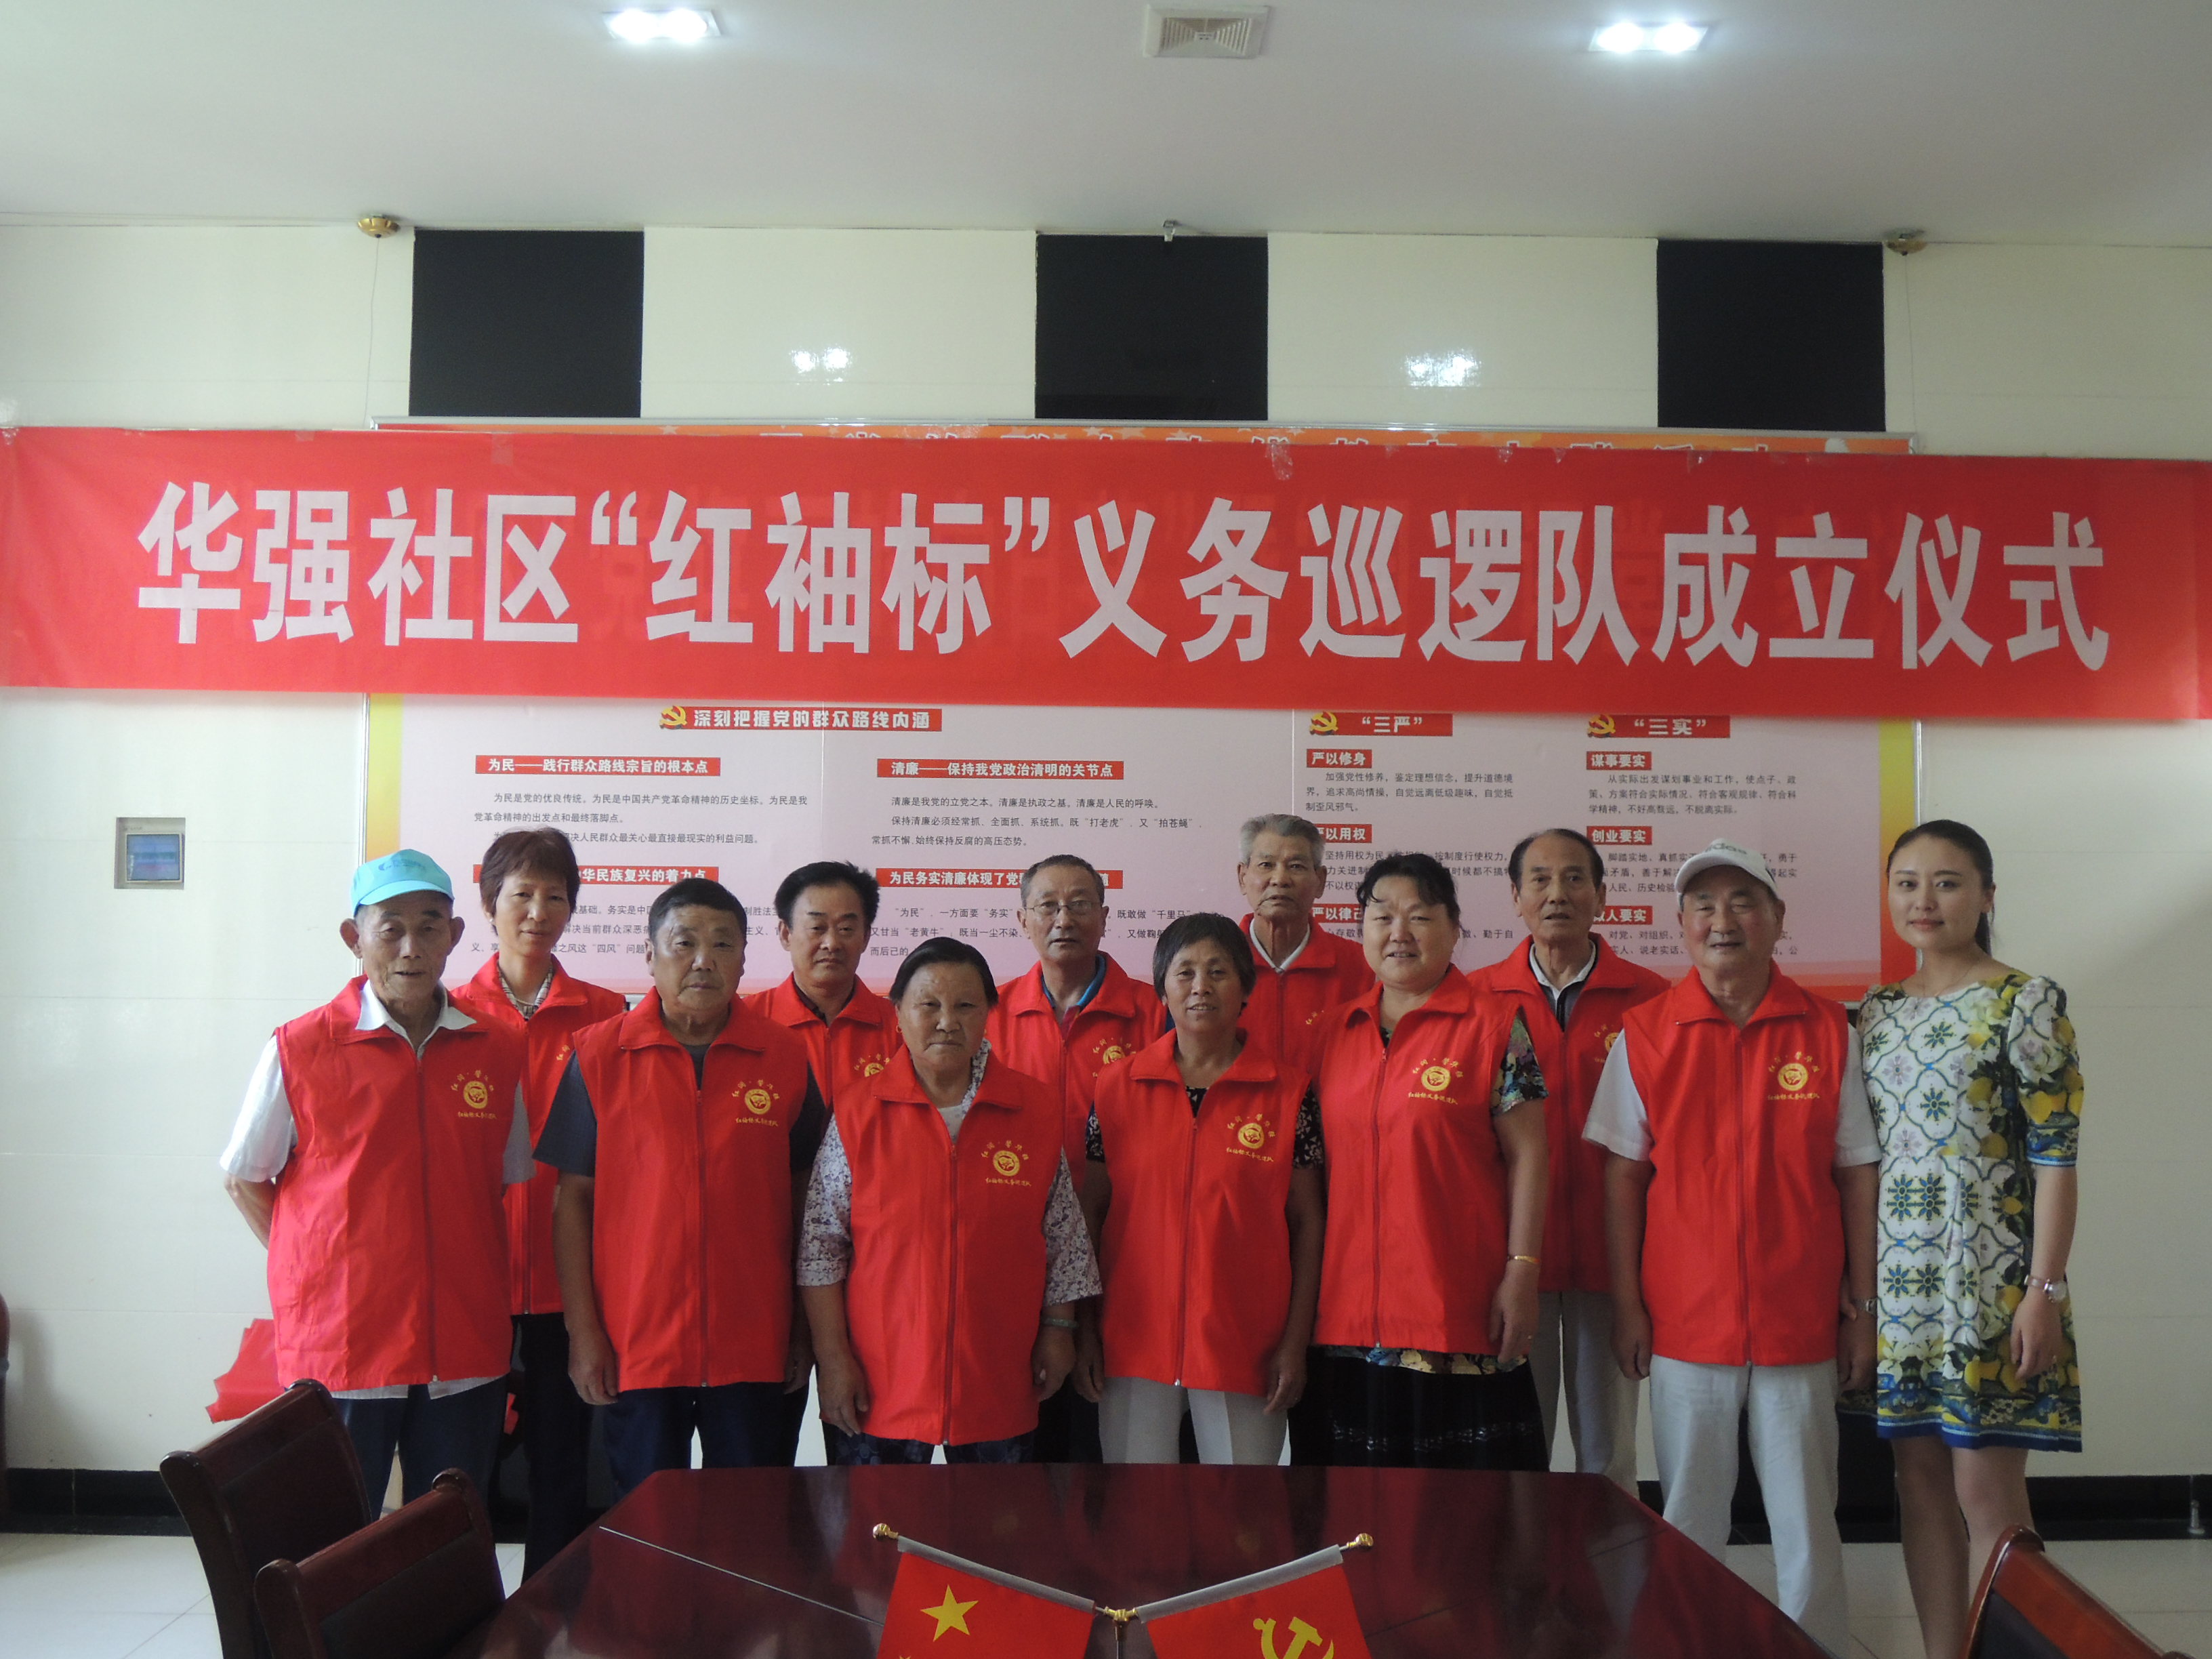 2015.6.11在华强社区会议室红袖标义务巡逻队正式成立.jpg